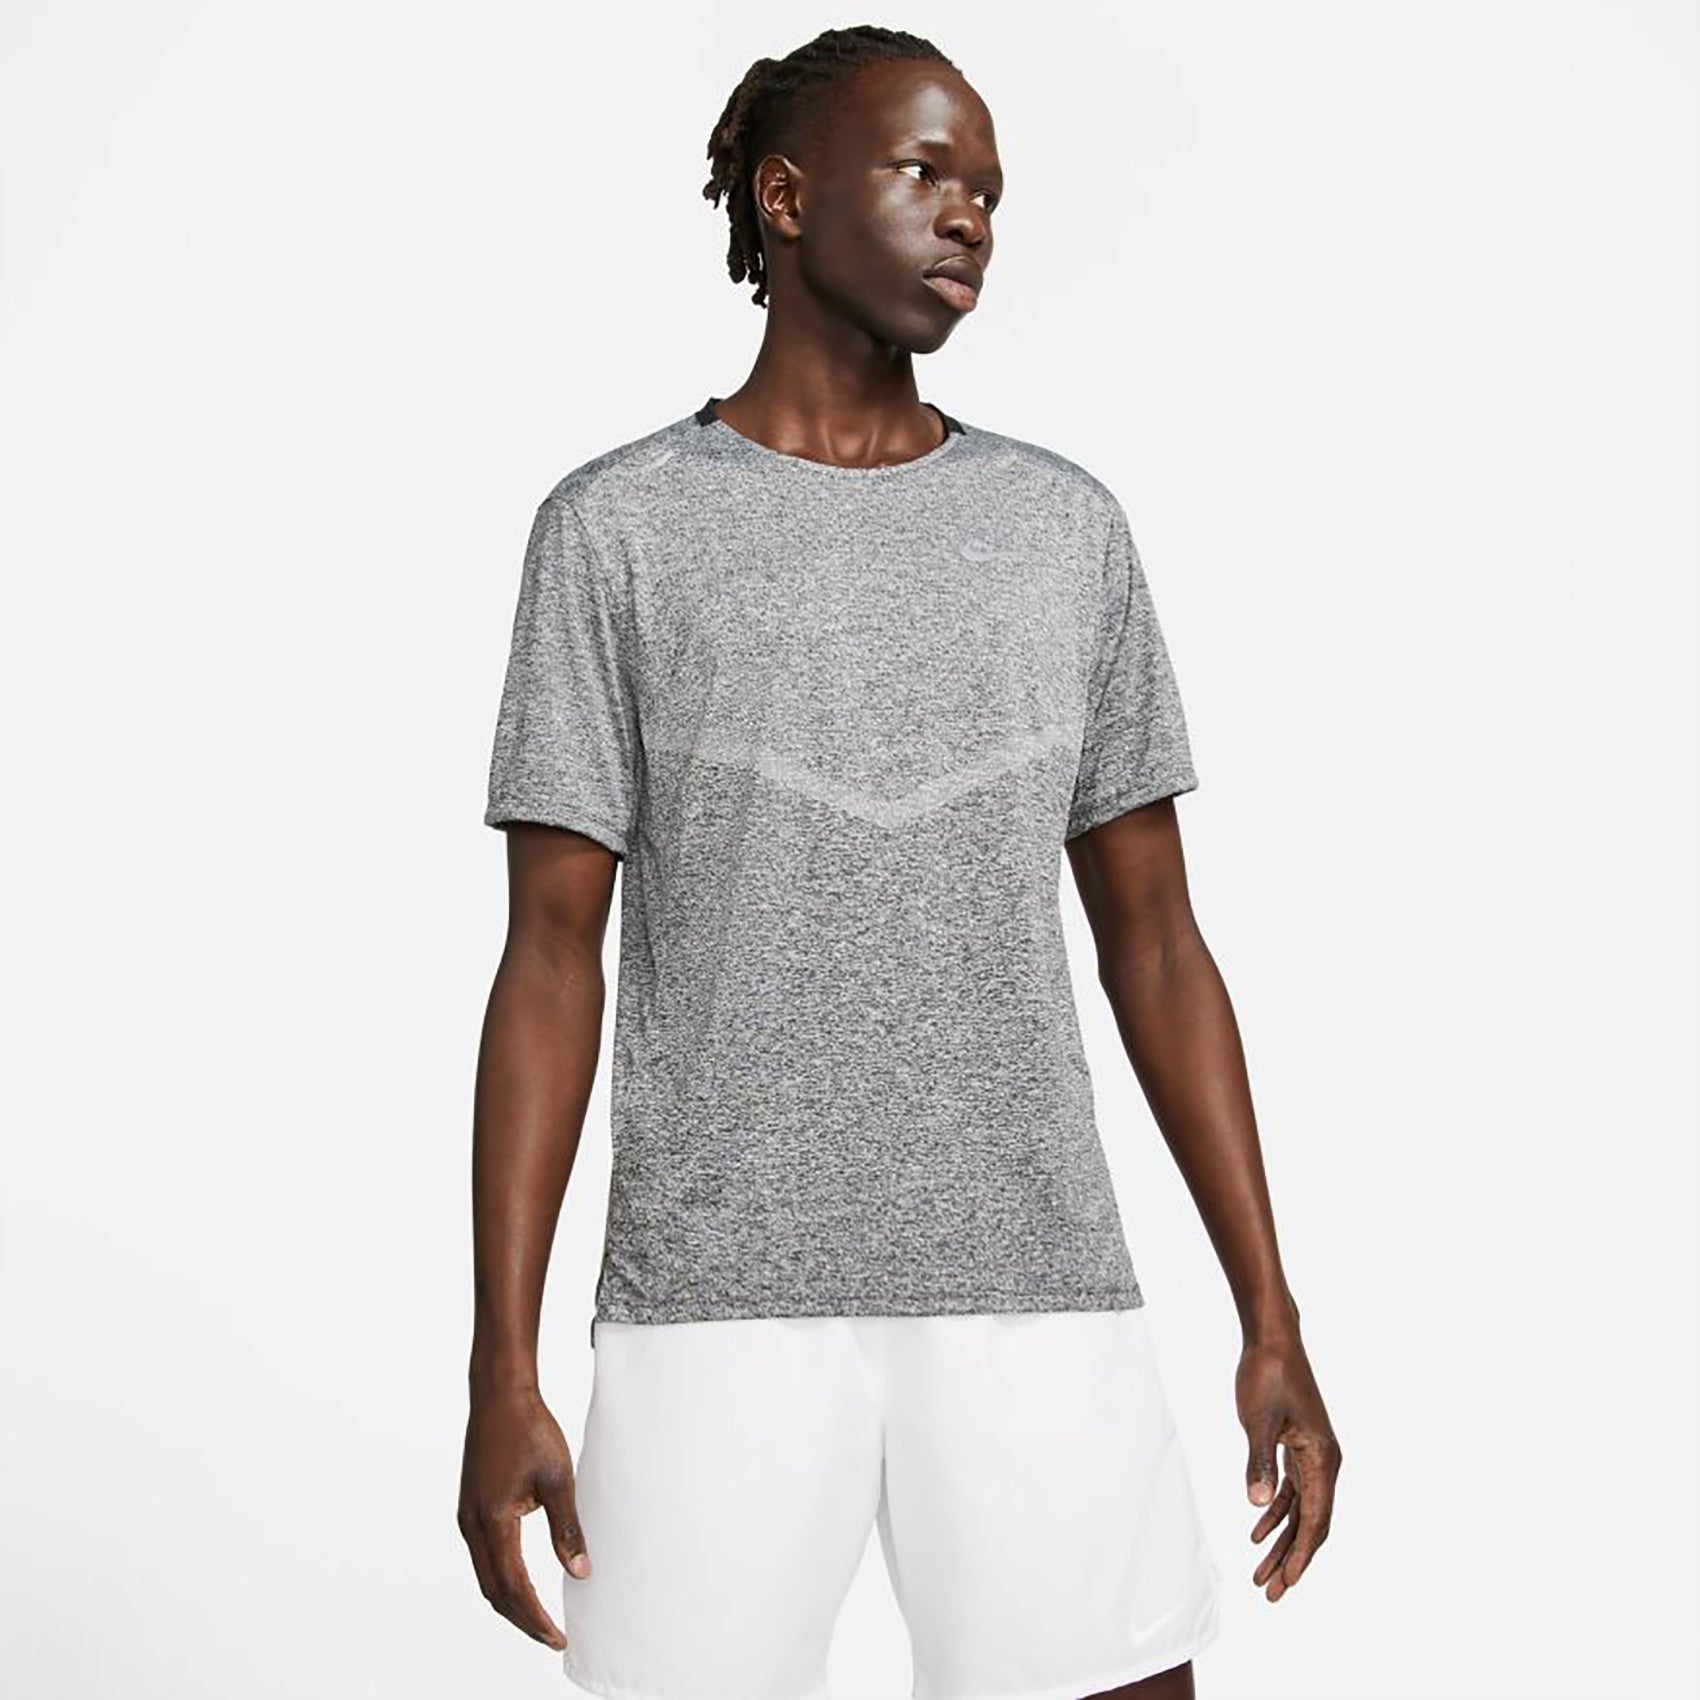 Nike Dri-FIT Run Division Rise 365 T-shirt Homme